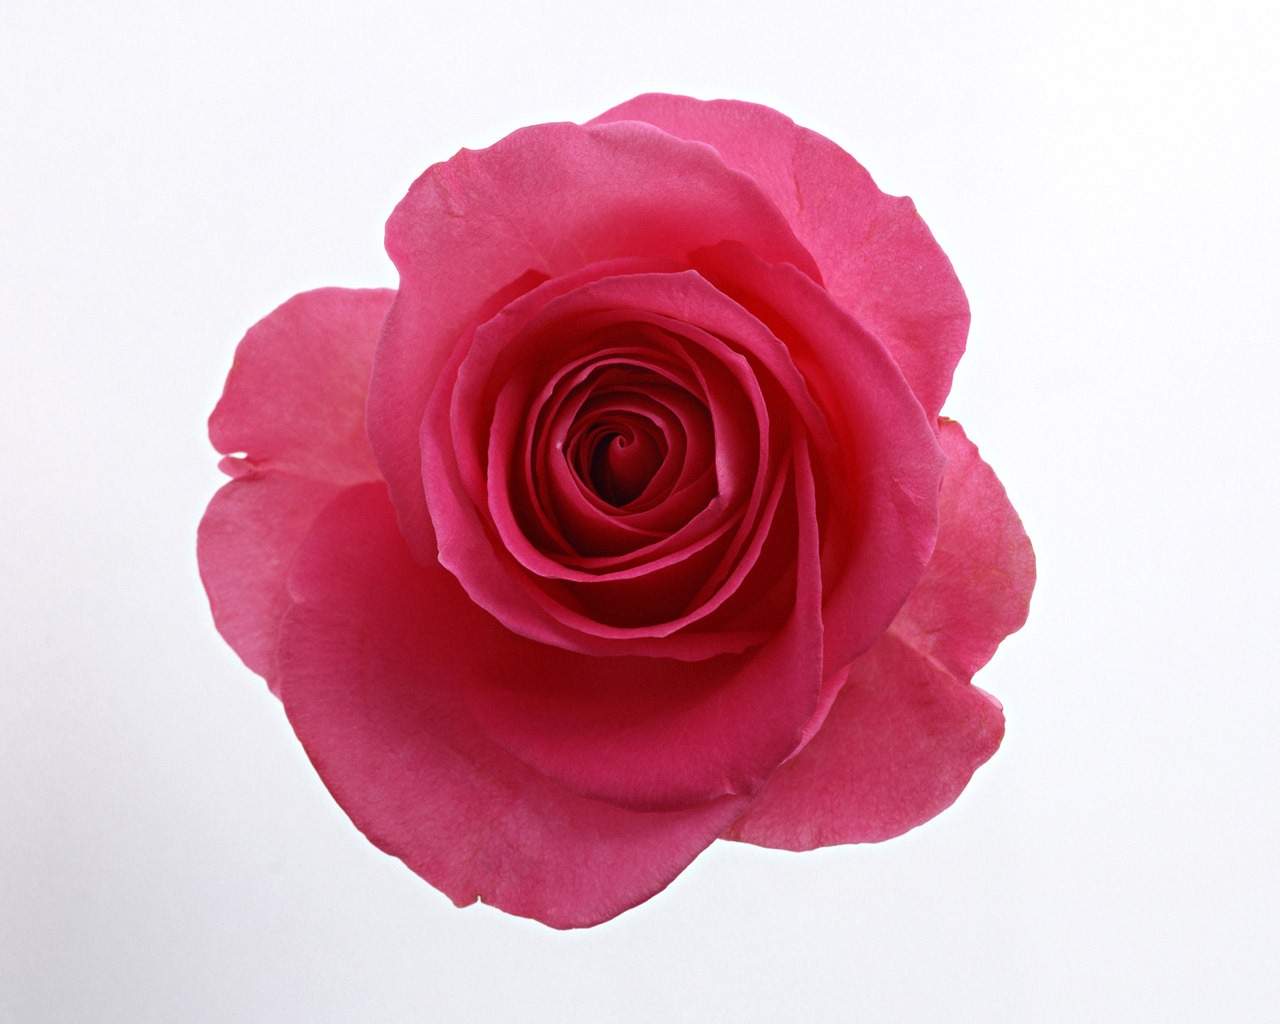 Rose Fondos de Fotografía (4) #19 - 1280x1024